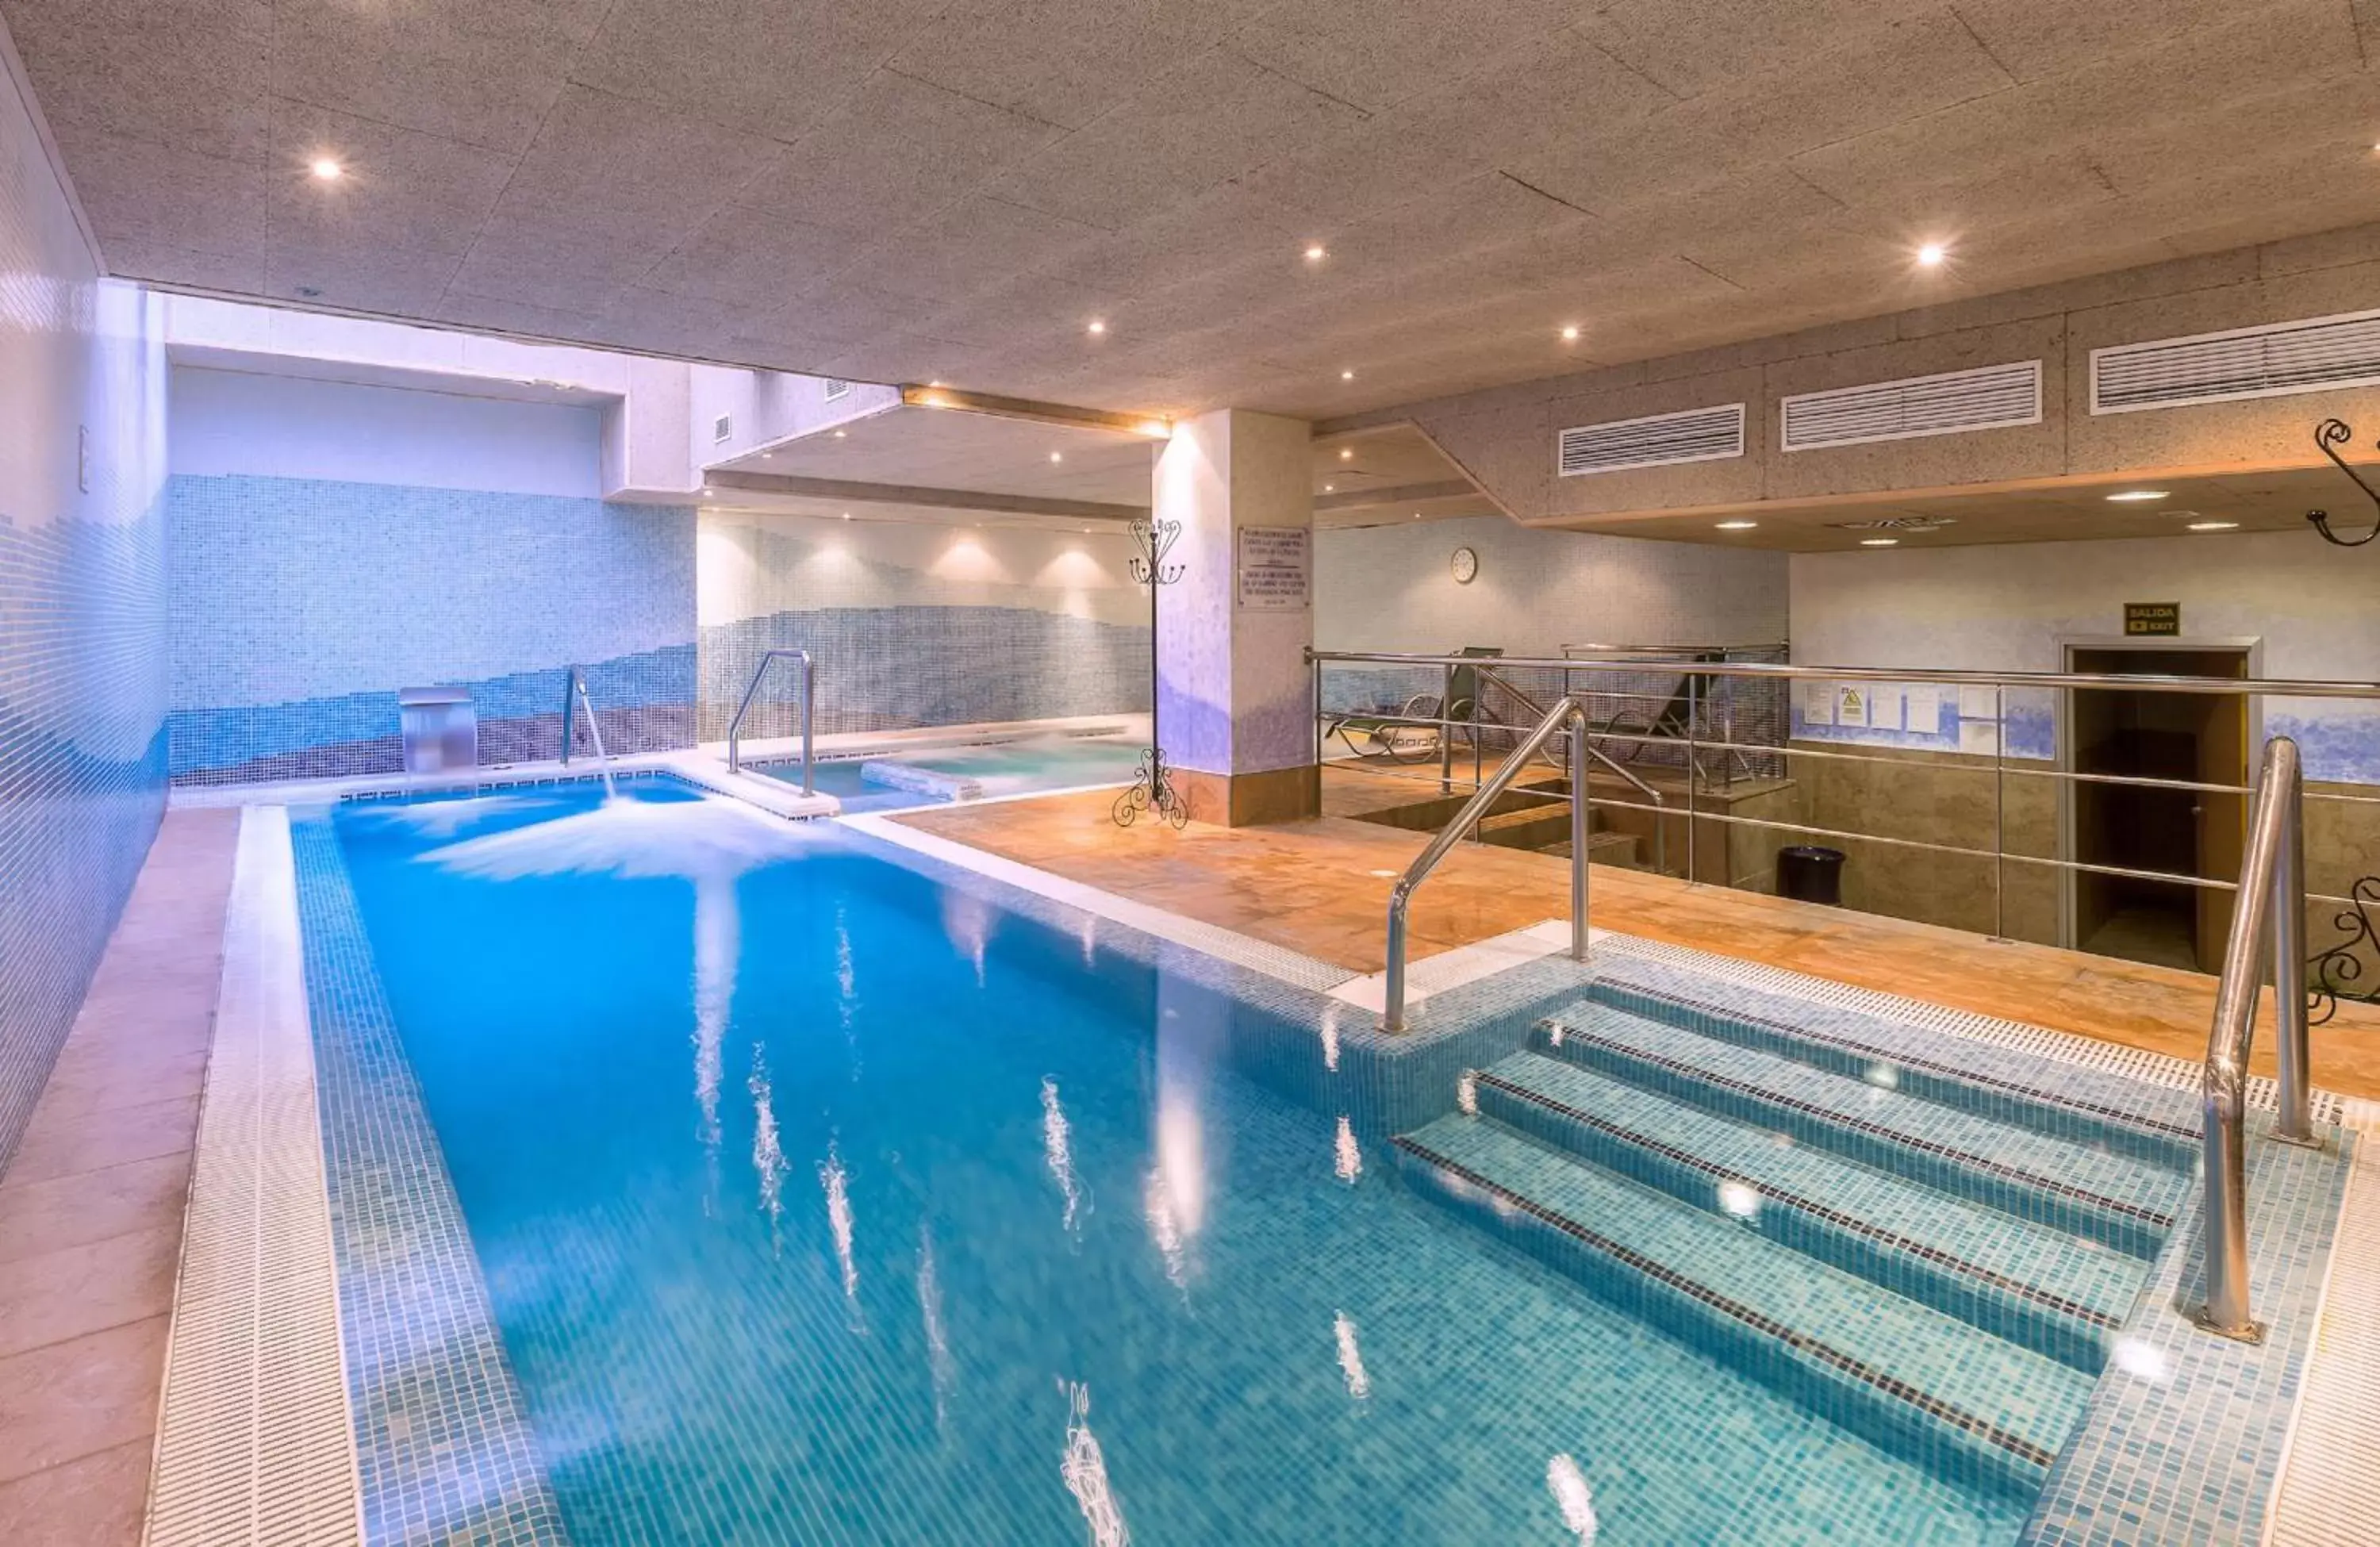 Spa and wellness centre/facilities, Swimming Pool in Leonardo Hotel Fuengirola Costa del Sol